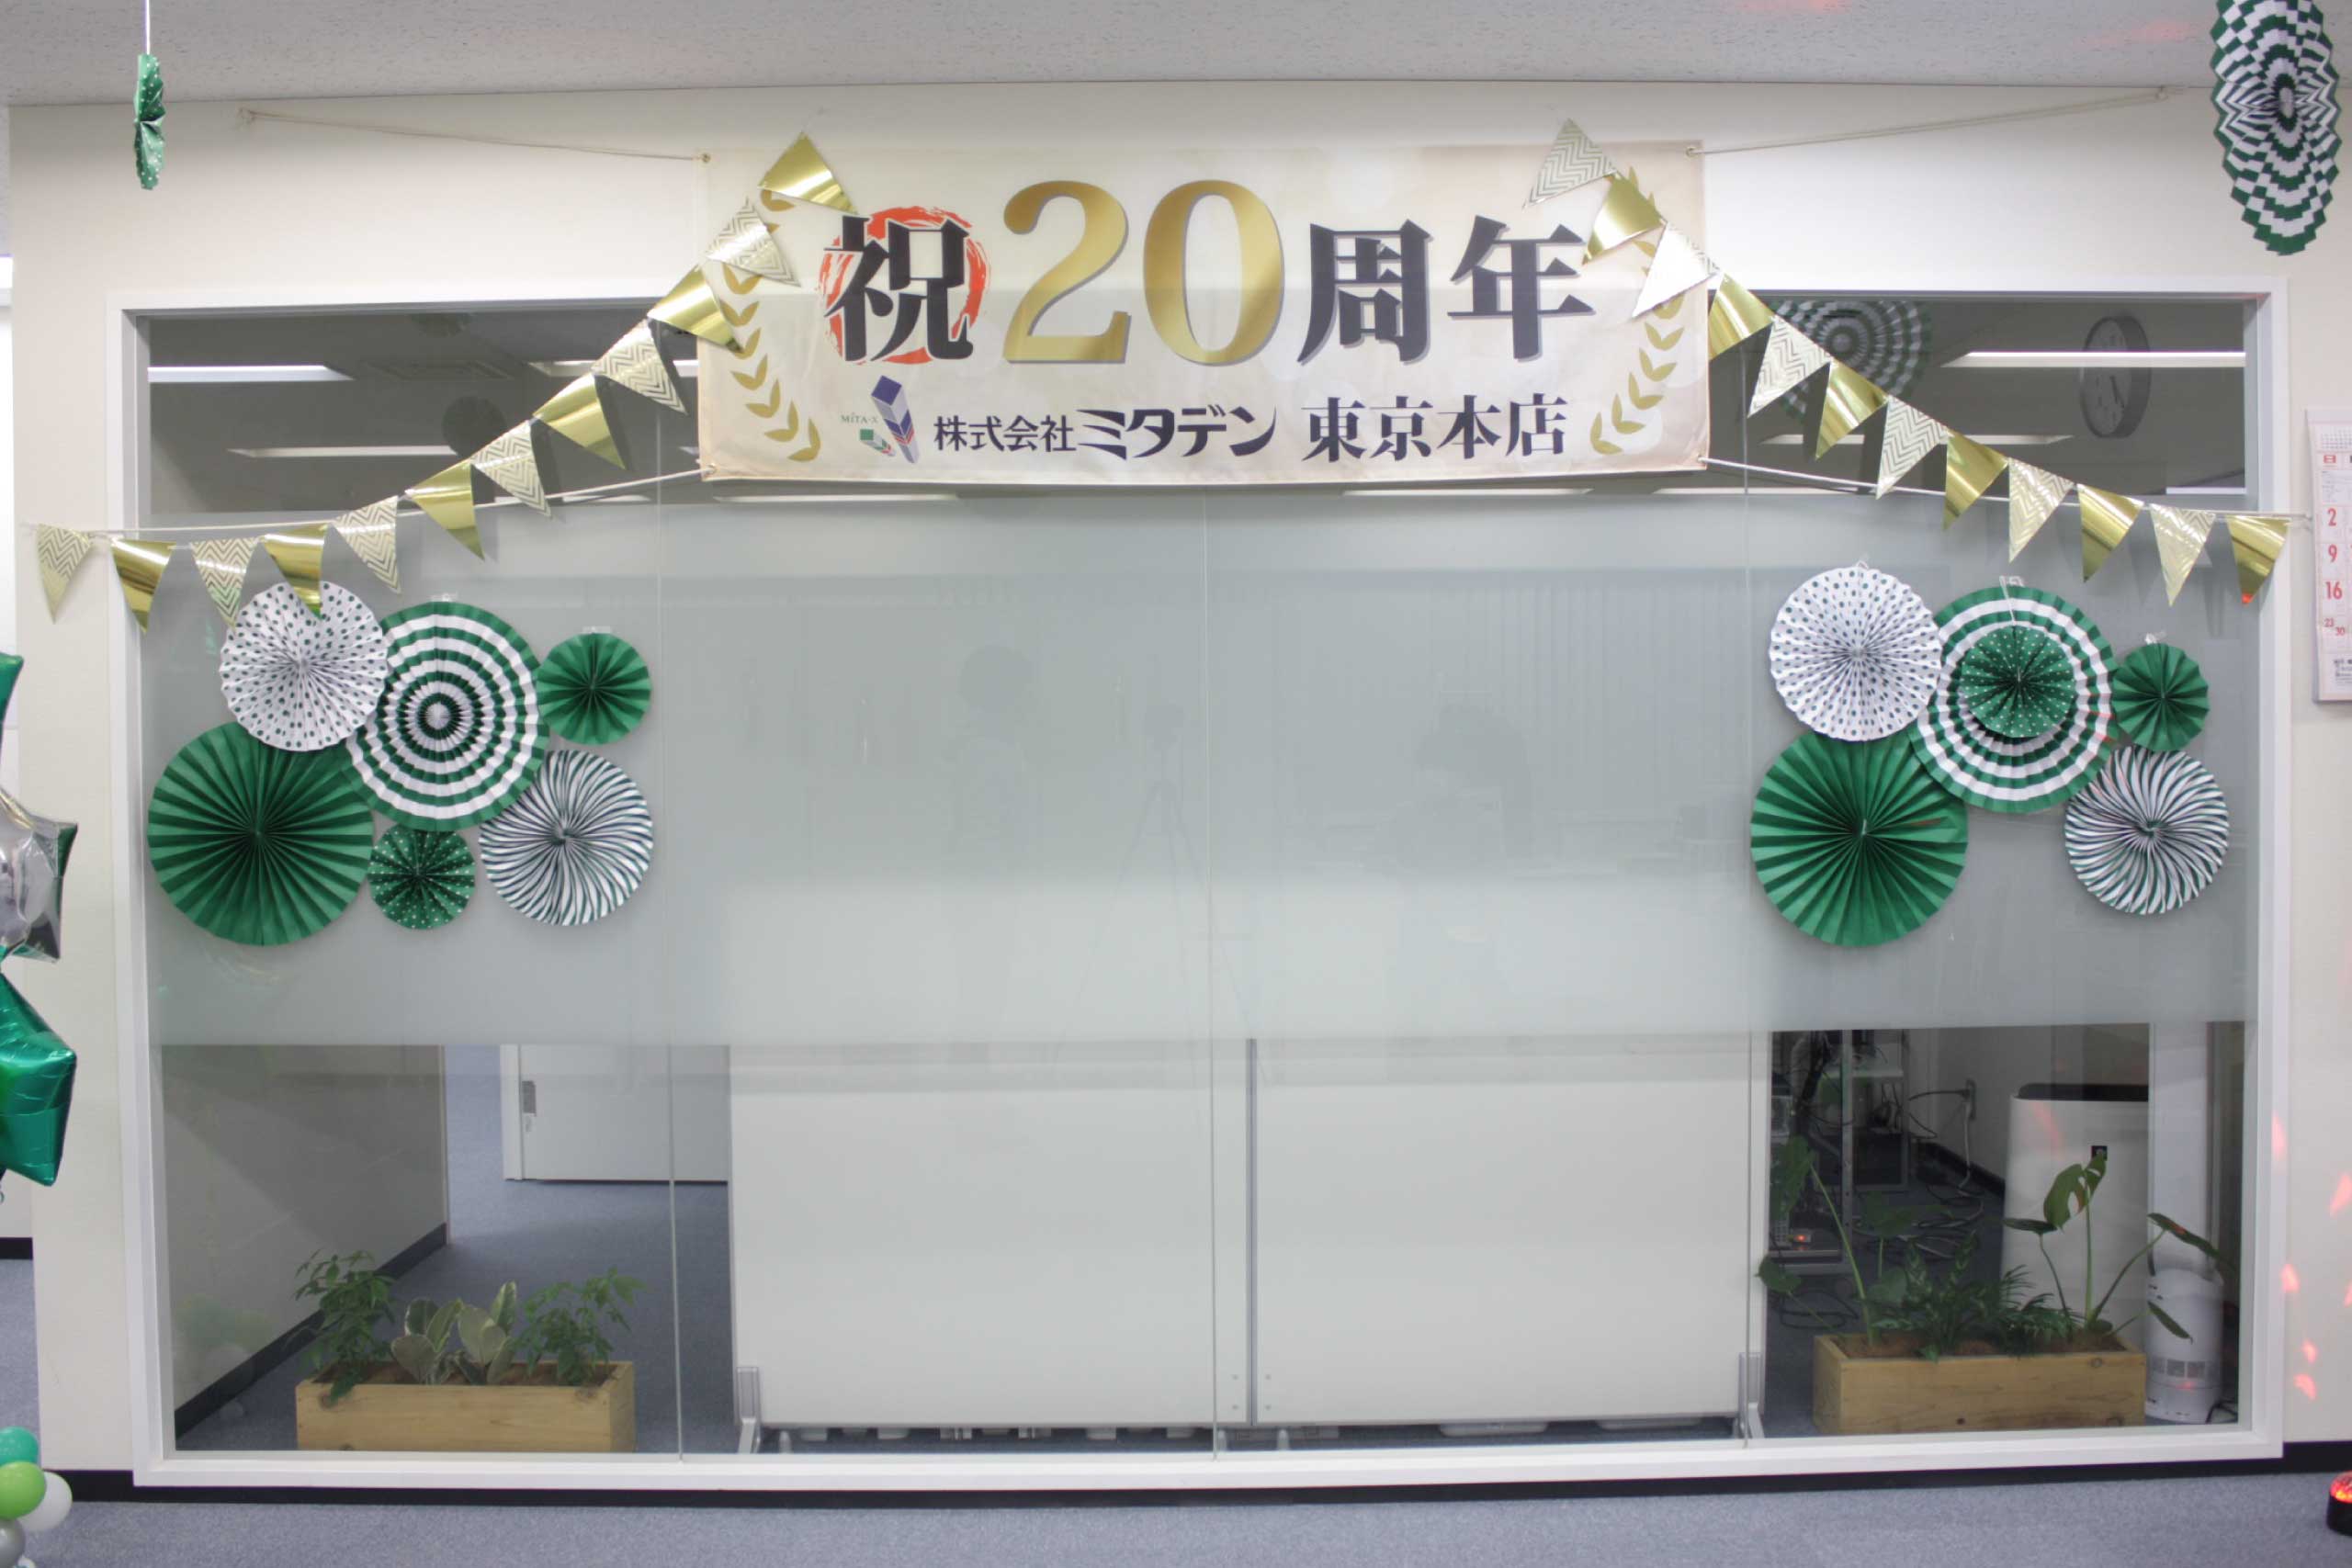 ミタデン東京本店開設20周年